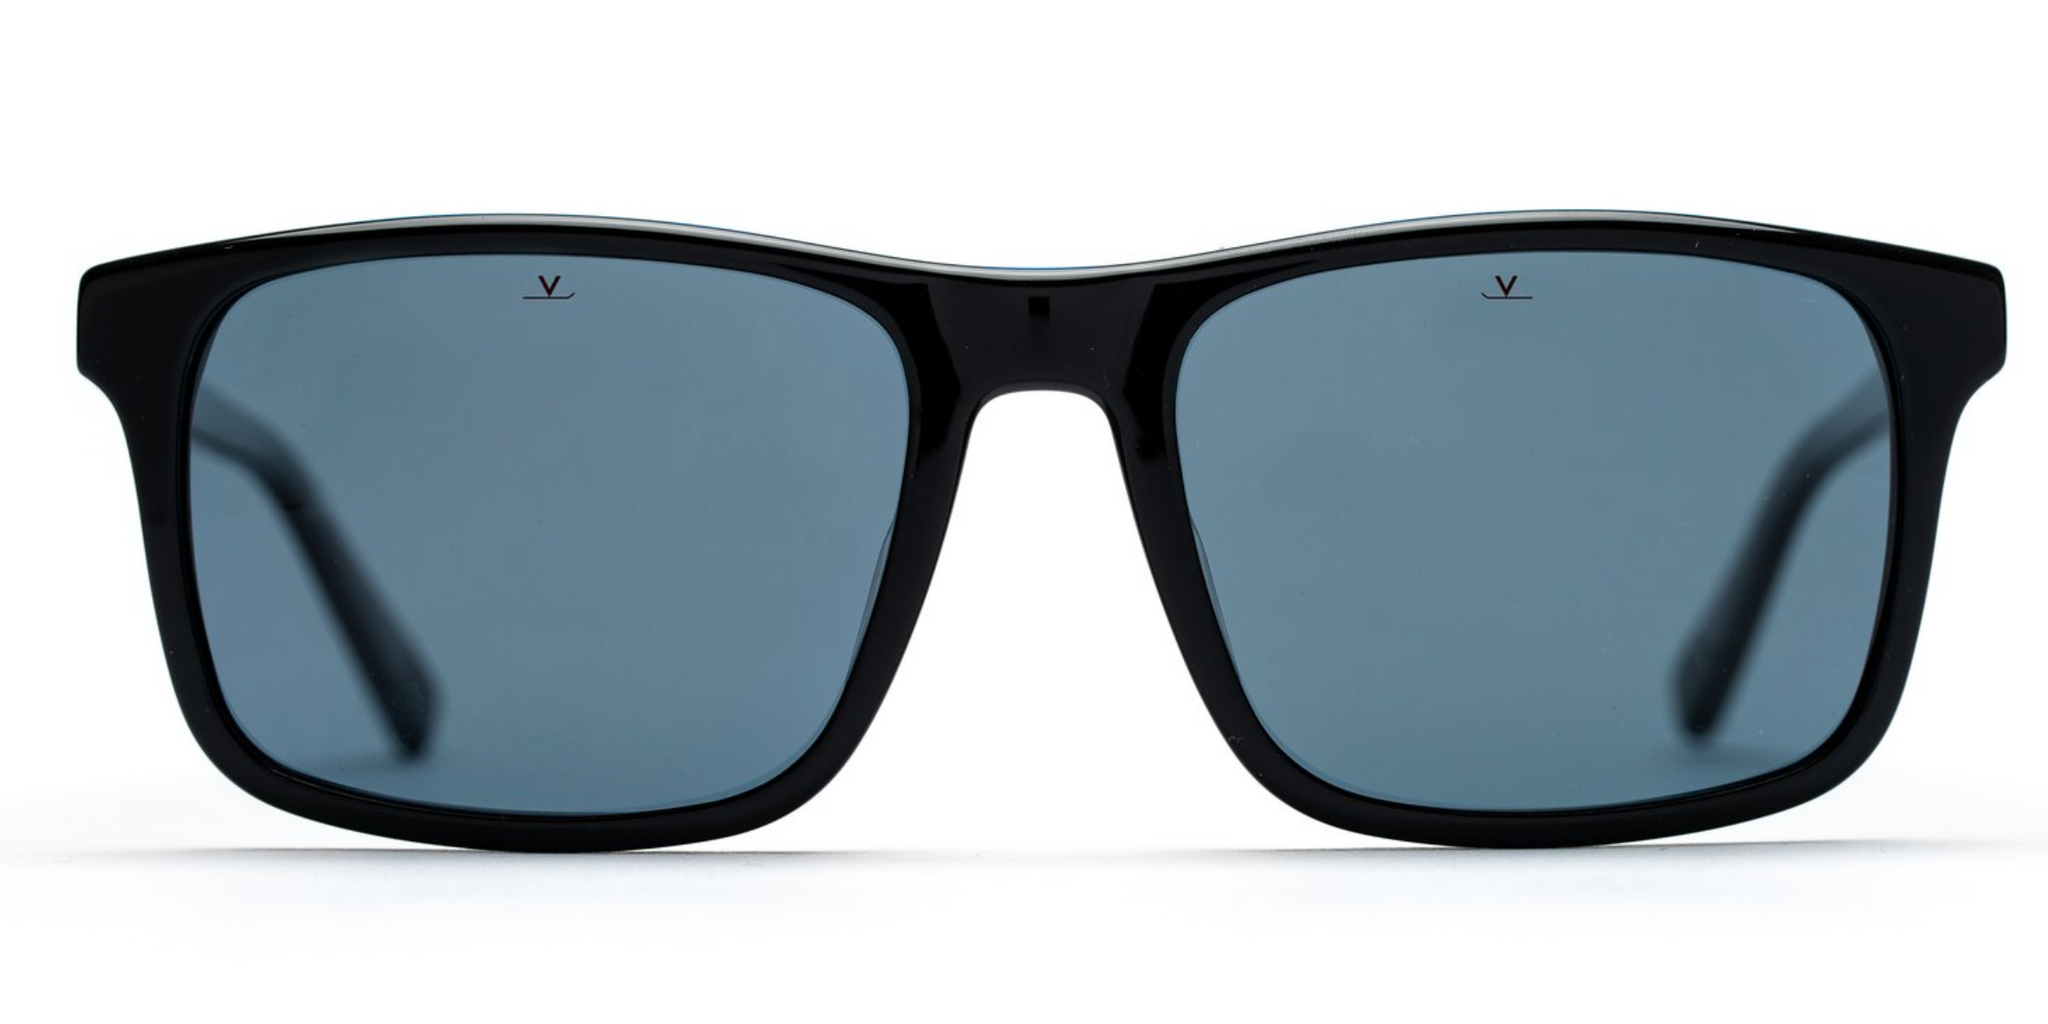 Vuarnet Belvederer 1619 Sunglasses -Mineral Glass Lenses - Flight Sunglasses